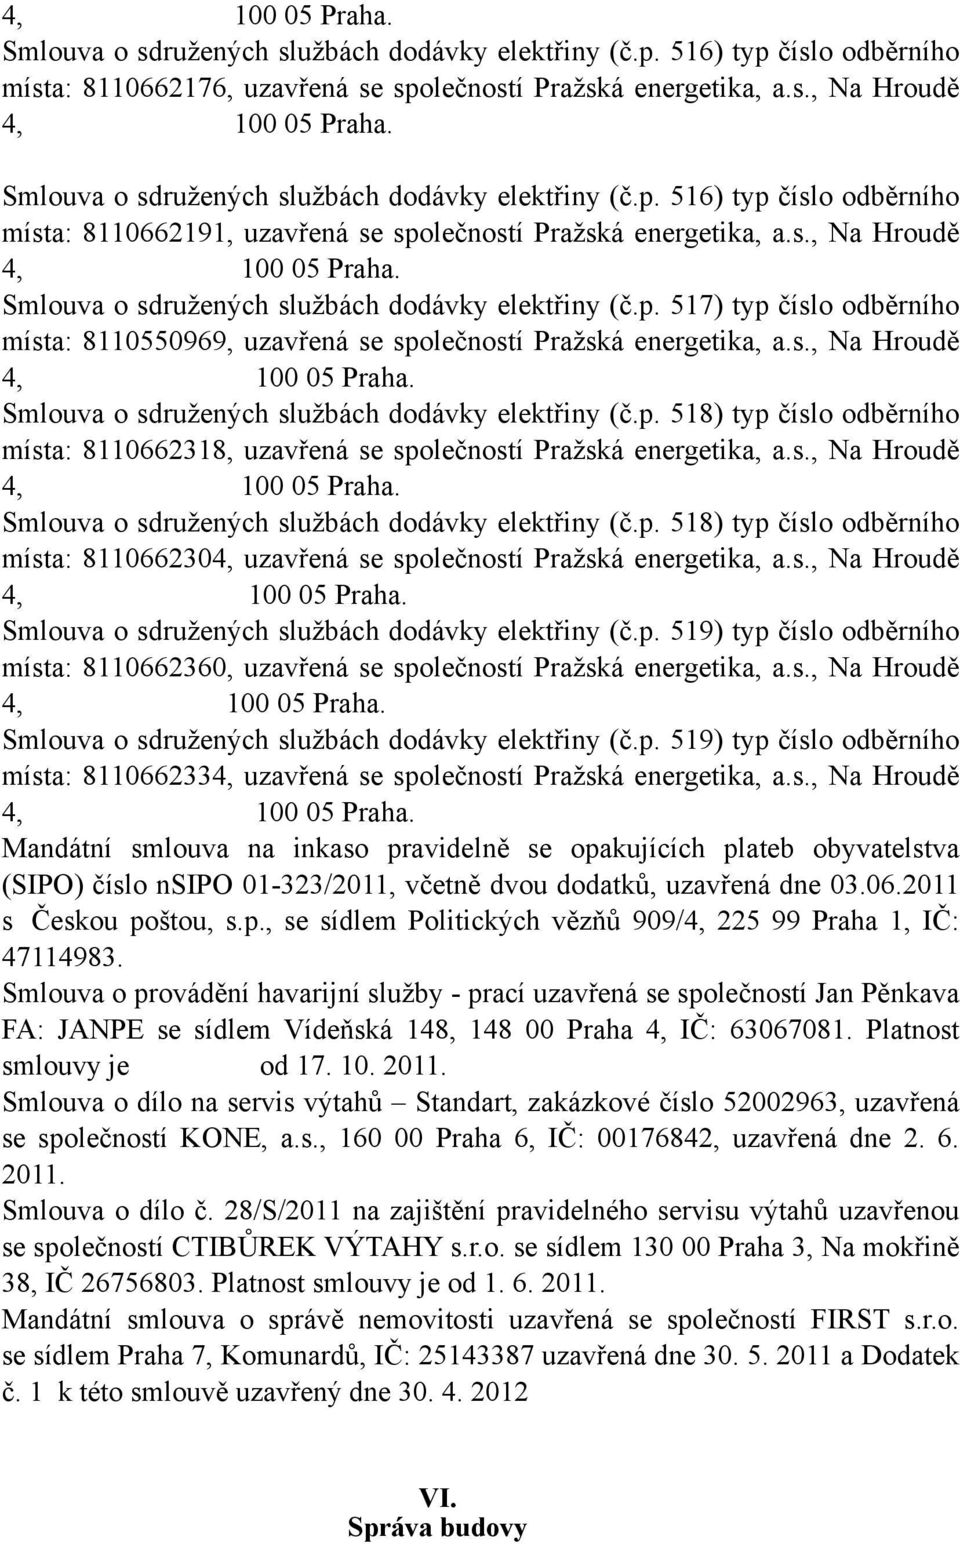 Smlouva o sdružených službách dodávky elektřiny (č.p. 517) typ číslo odběrního místa: 8110550969, uzavřená se společností Pražská energetika, a.s., Na Hroudě 4, 100 05 Praha.